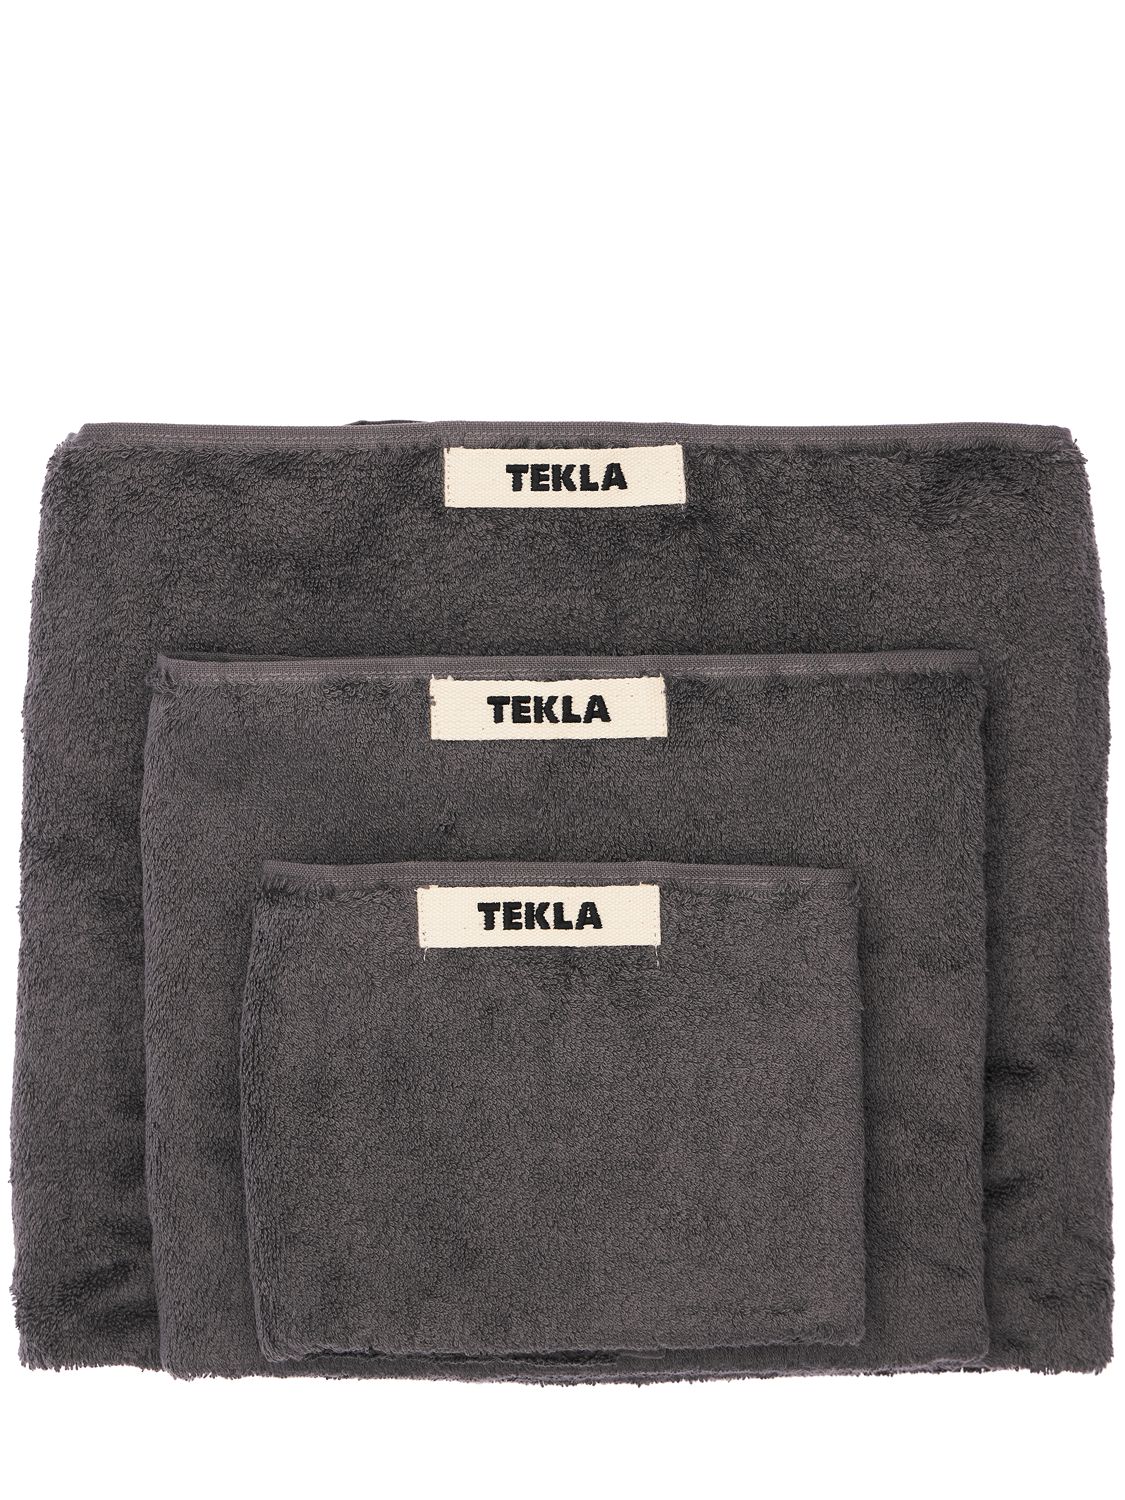 Tekla 有机棉毛巾3条套装 In Charcoal